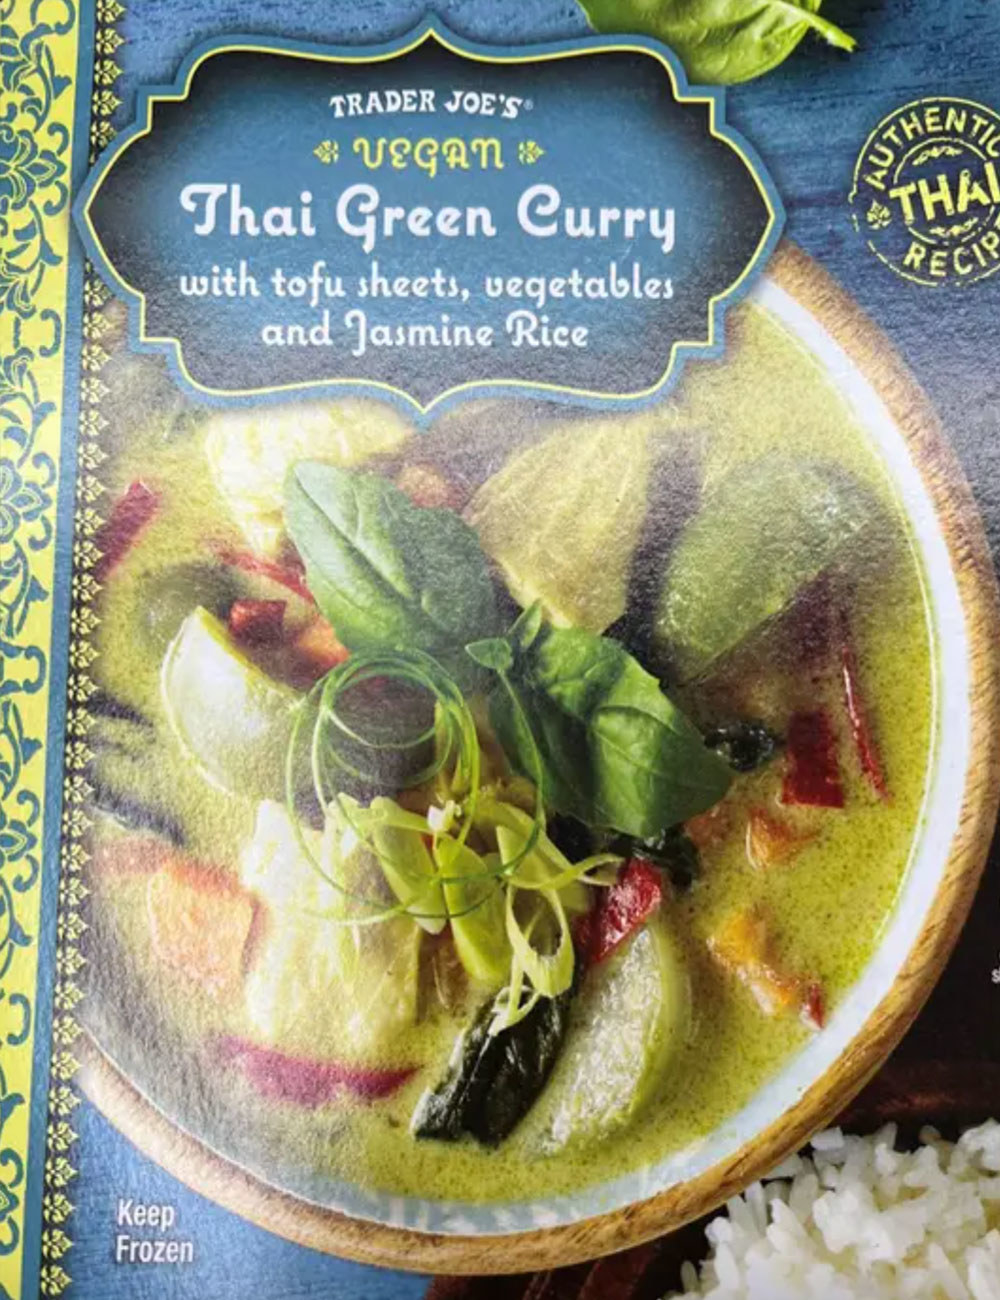 A box of Vegan Thai Green Curry.